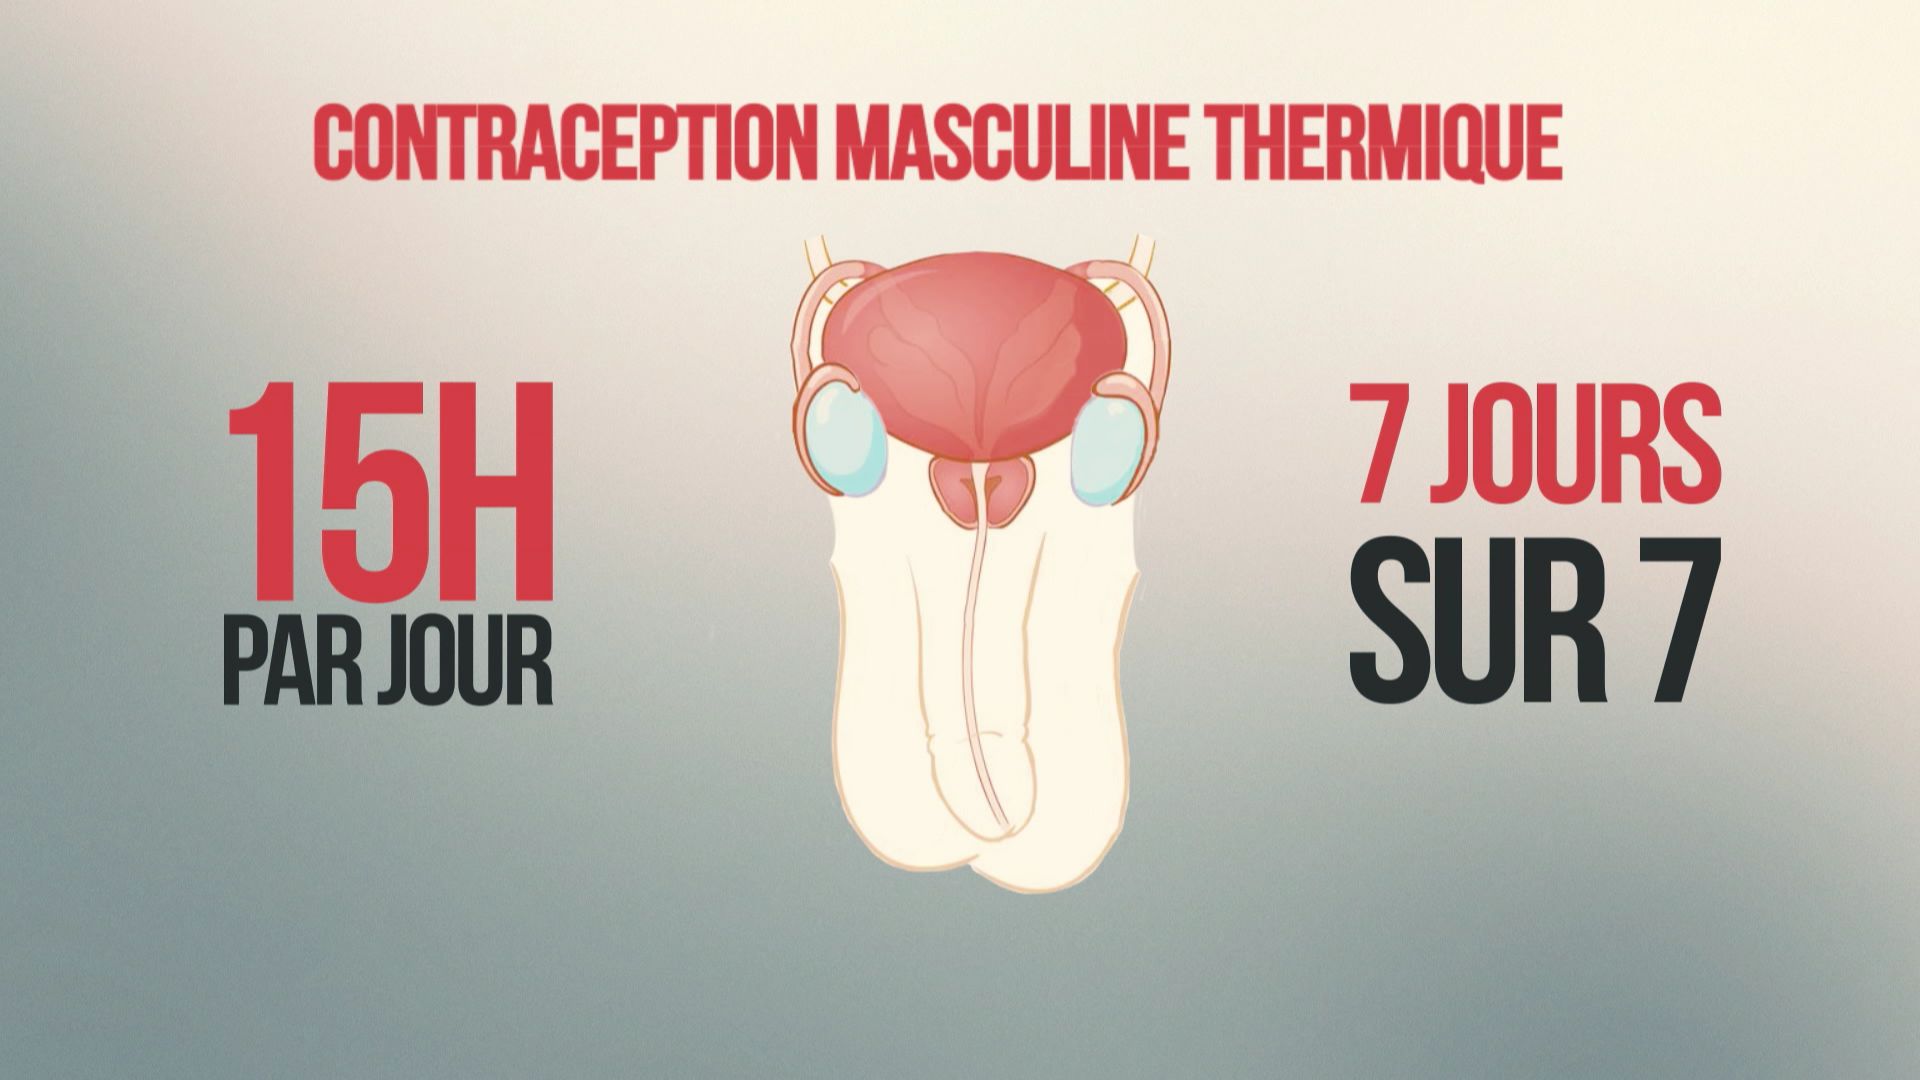 La contraception masculine thermique.